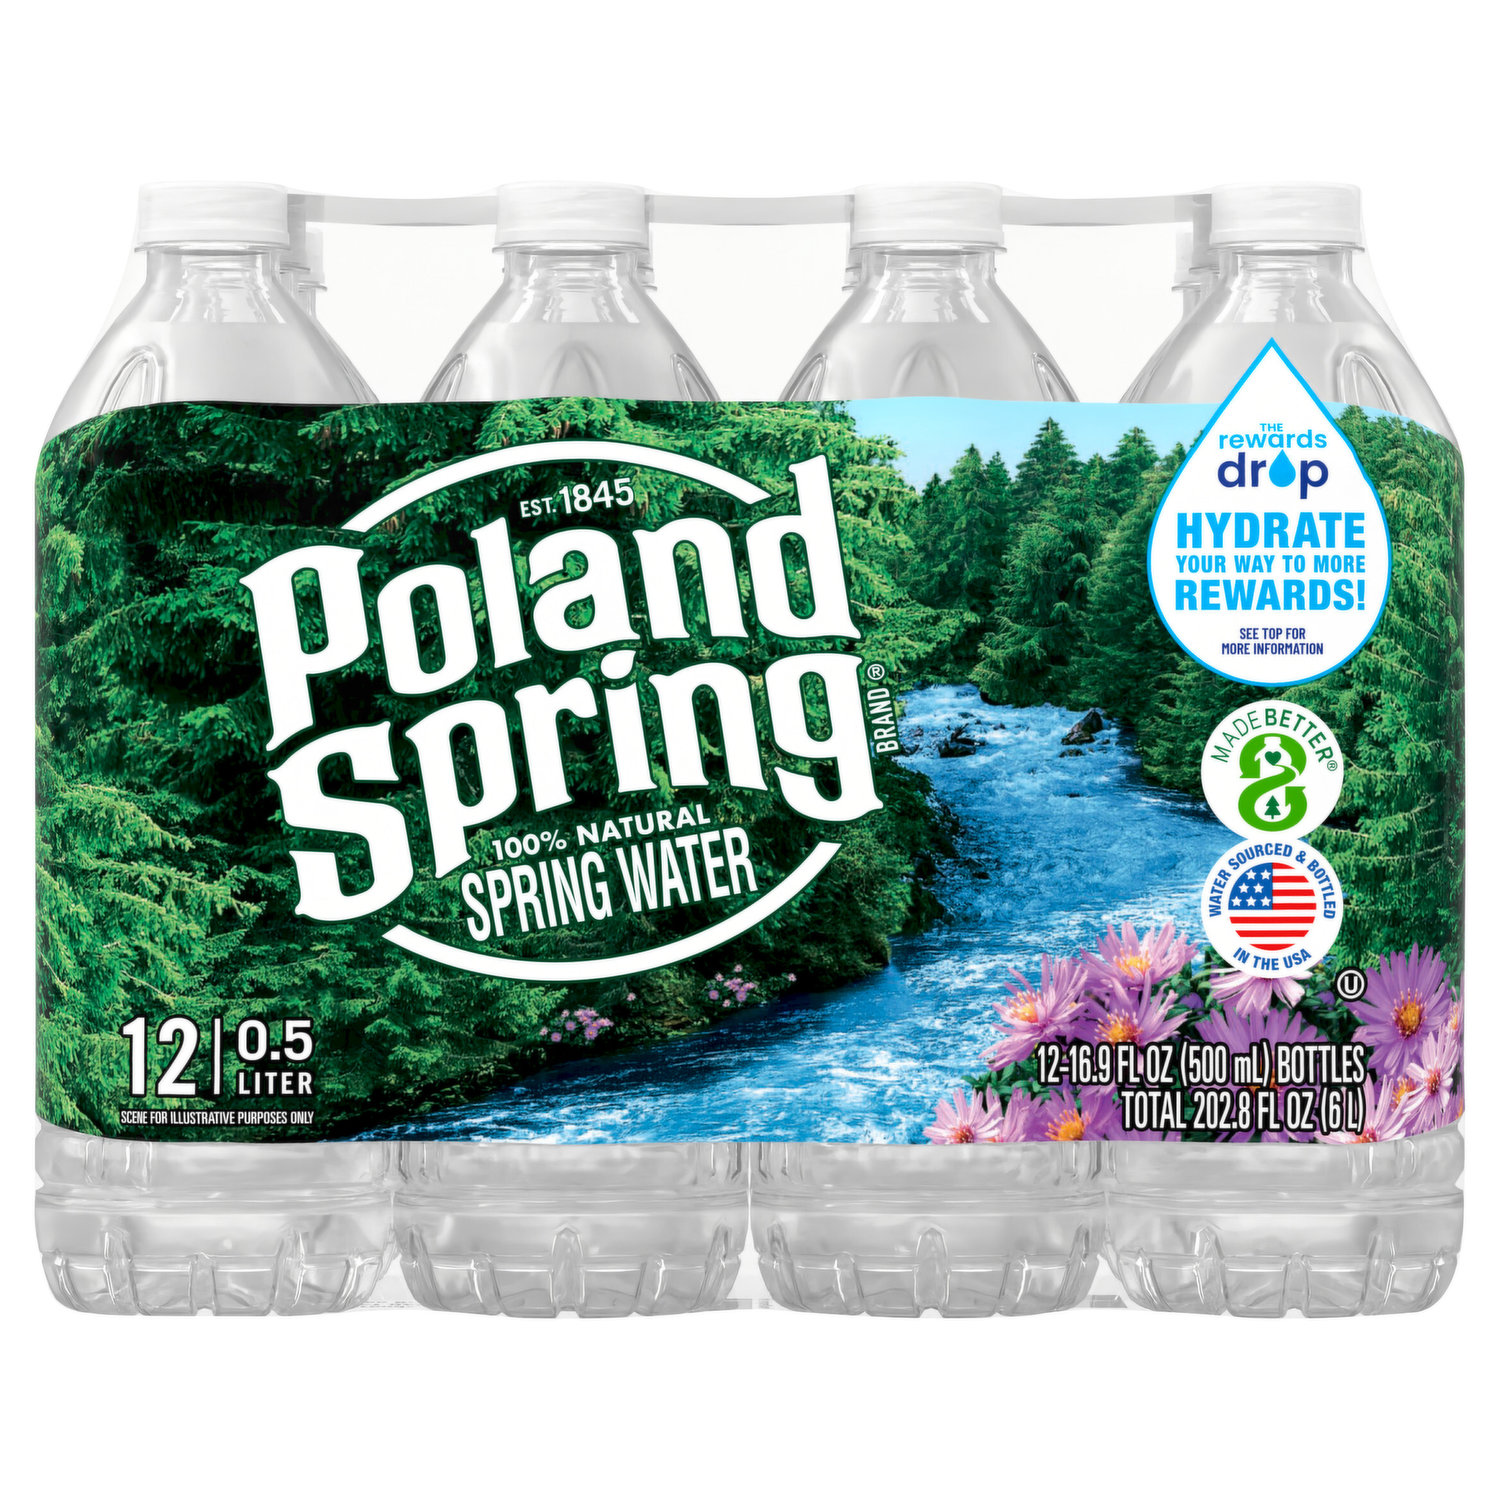 Poland Spring, Bottles, 16 fl oz, 24 pack